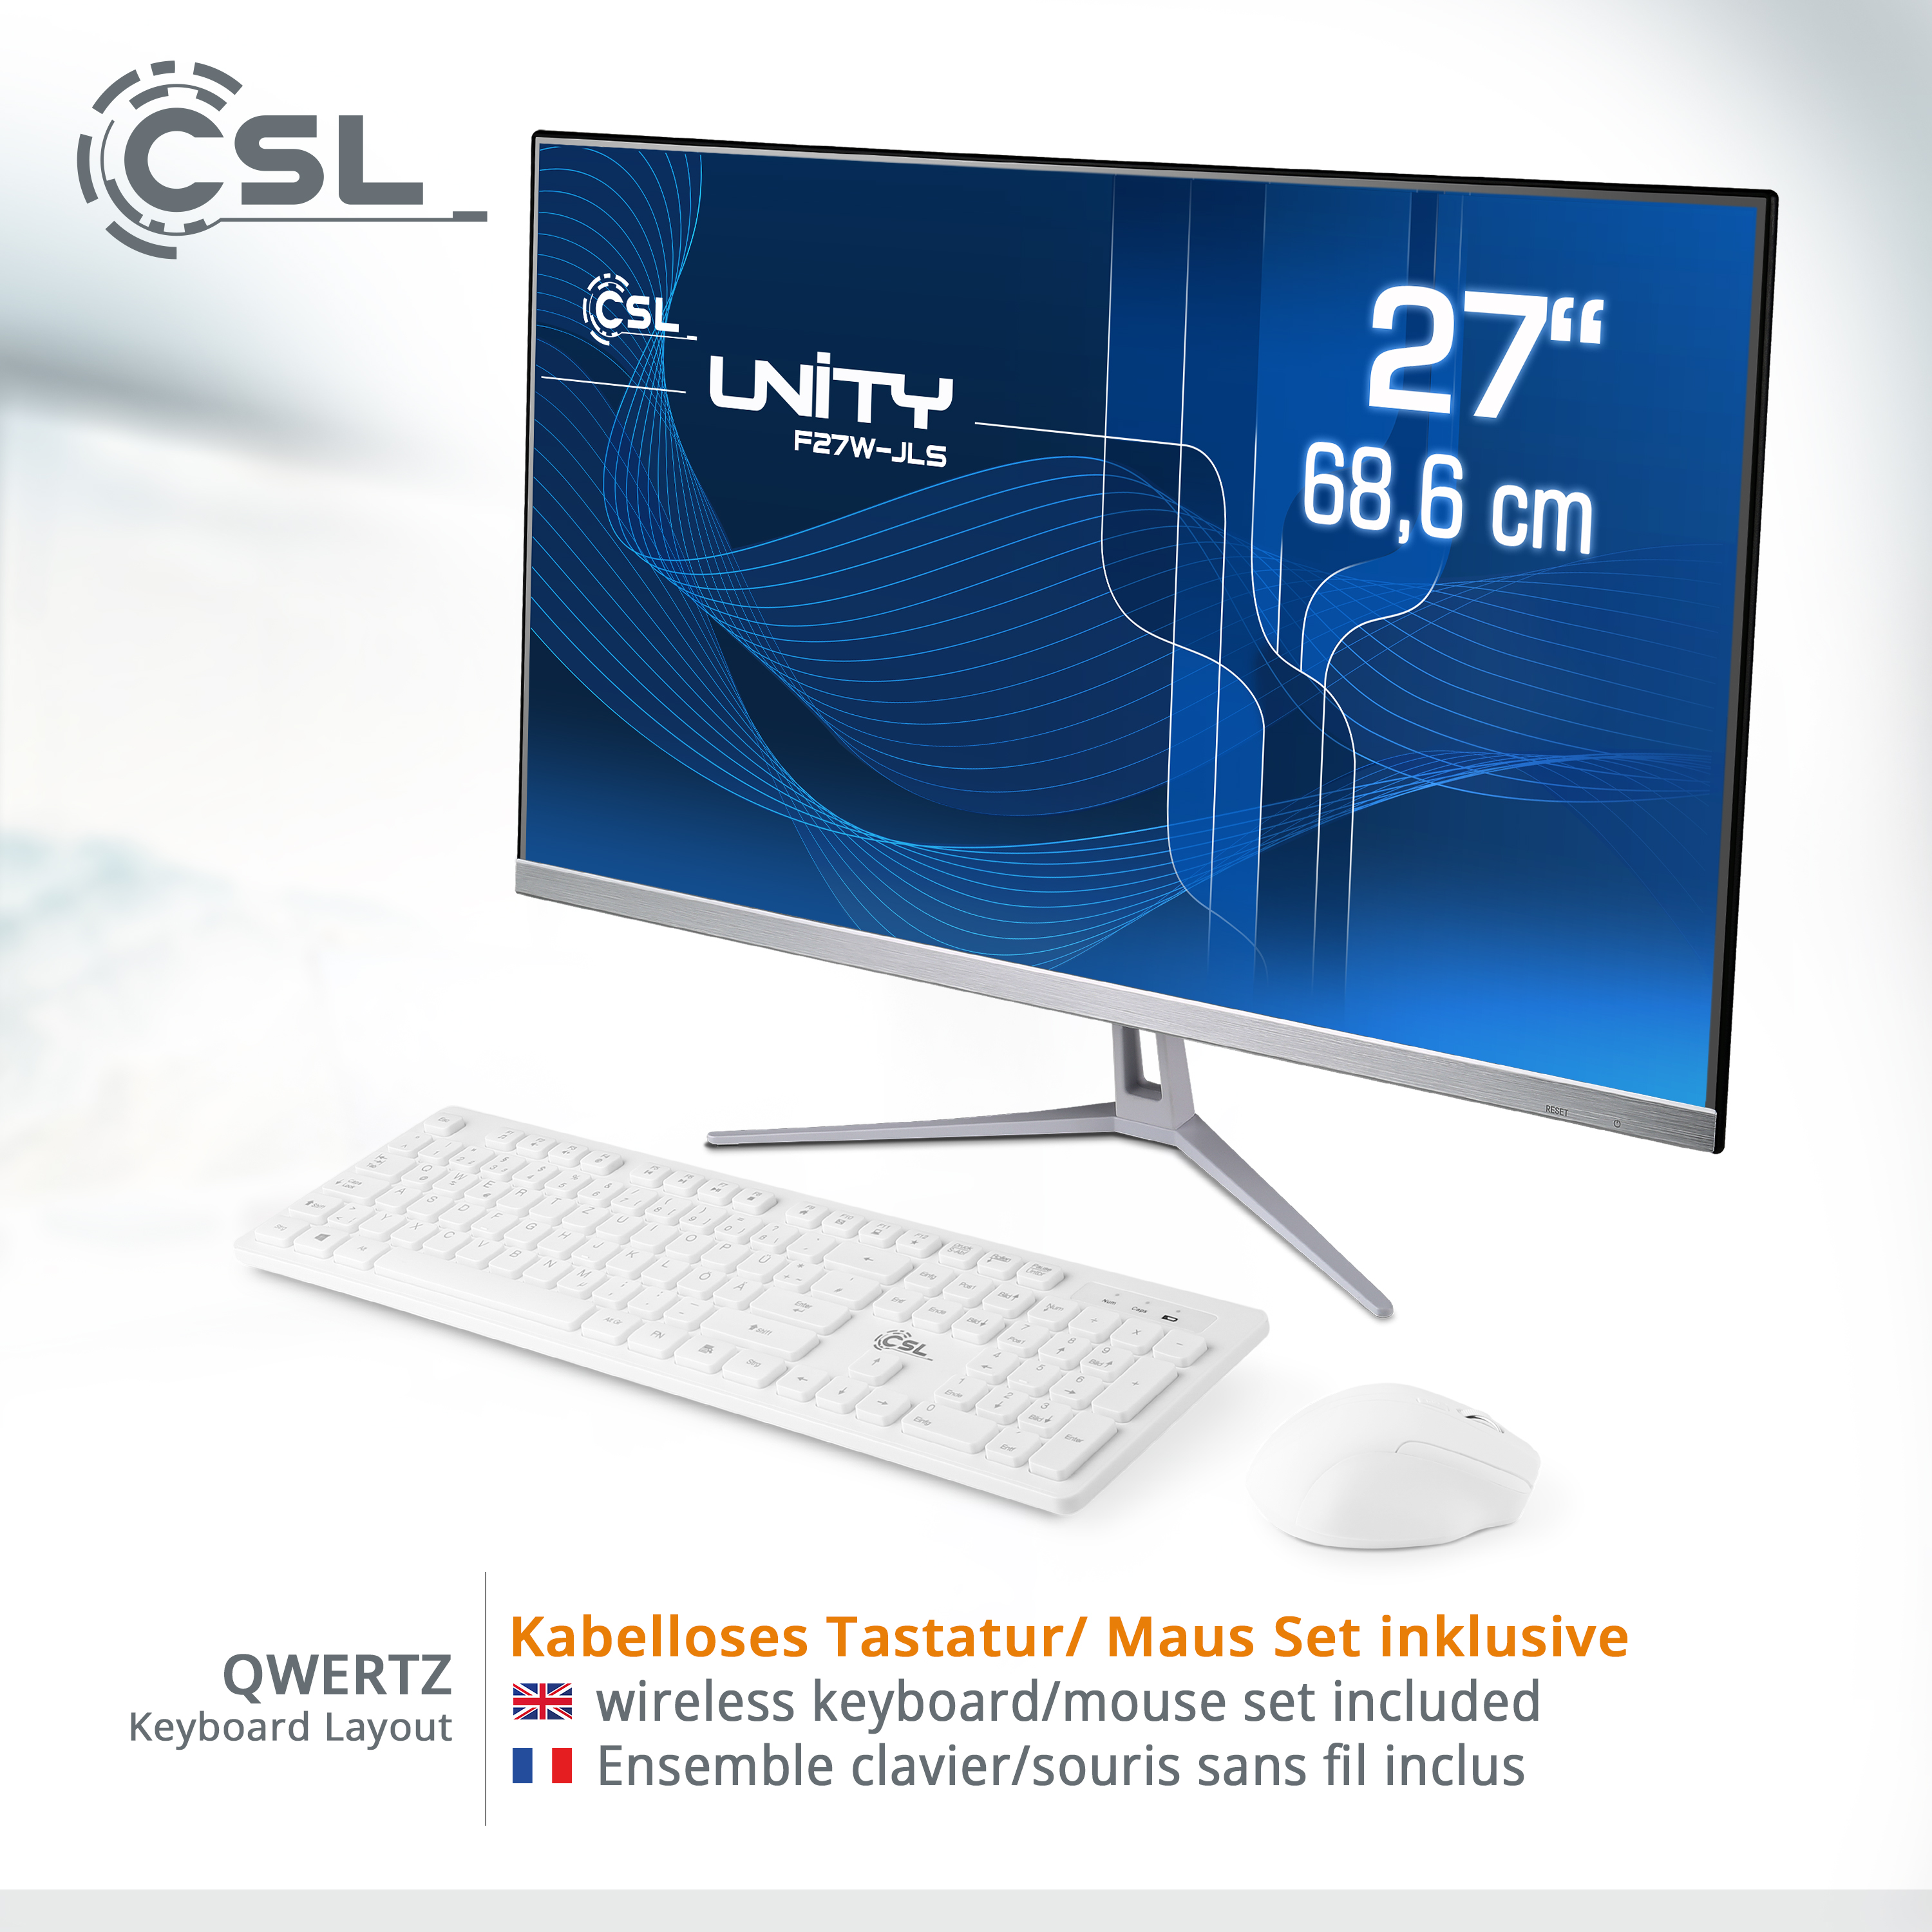 CSL Unity F27W-JLS Pentium / Graphics, GB GB 1000 Zoll GB RAM mit / 16 Display, Pro, Win / Intel® UHD 27 1000 GB 16 11 All-in-One-PC RAM, weiß SSD